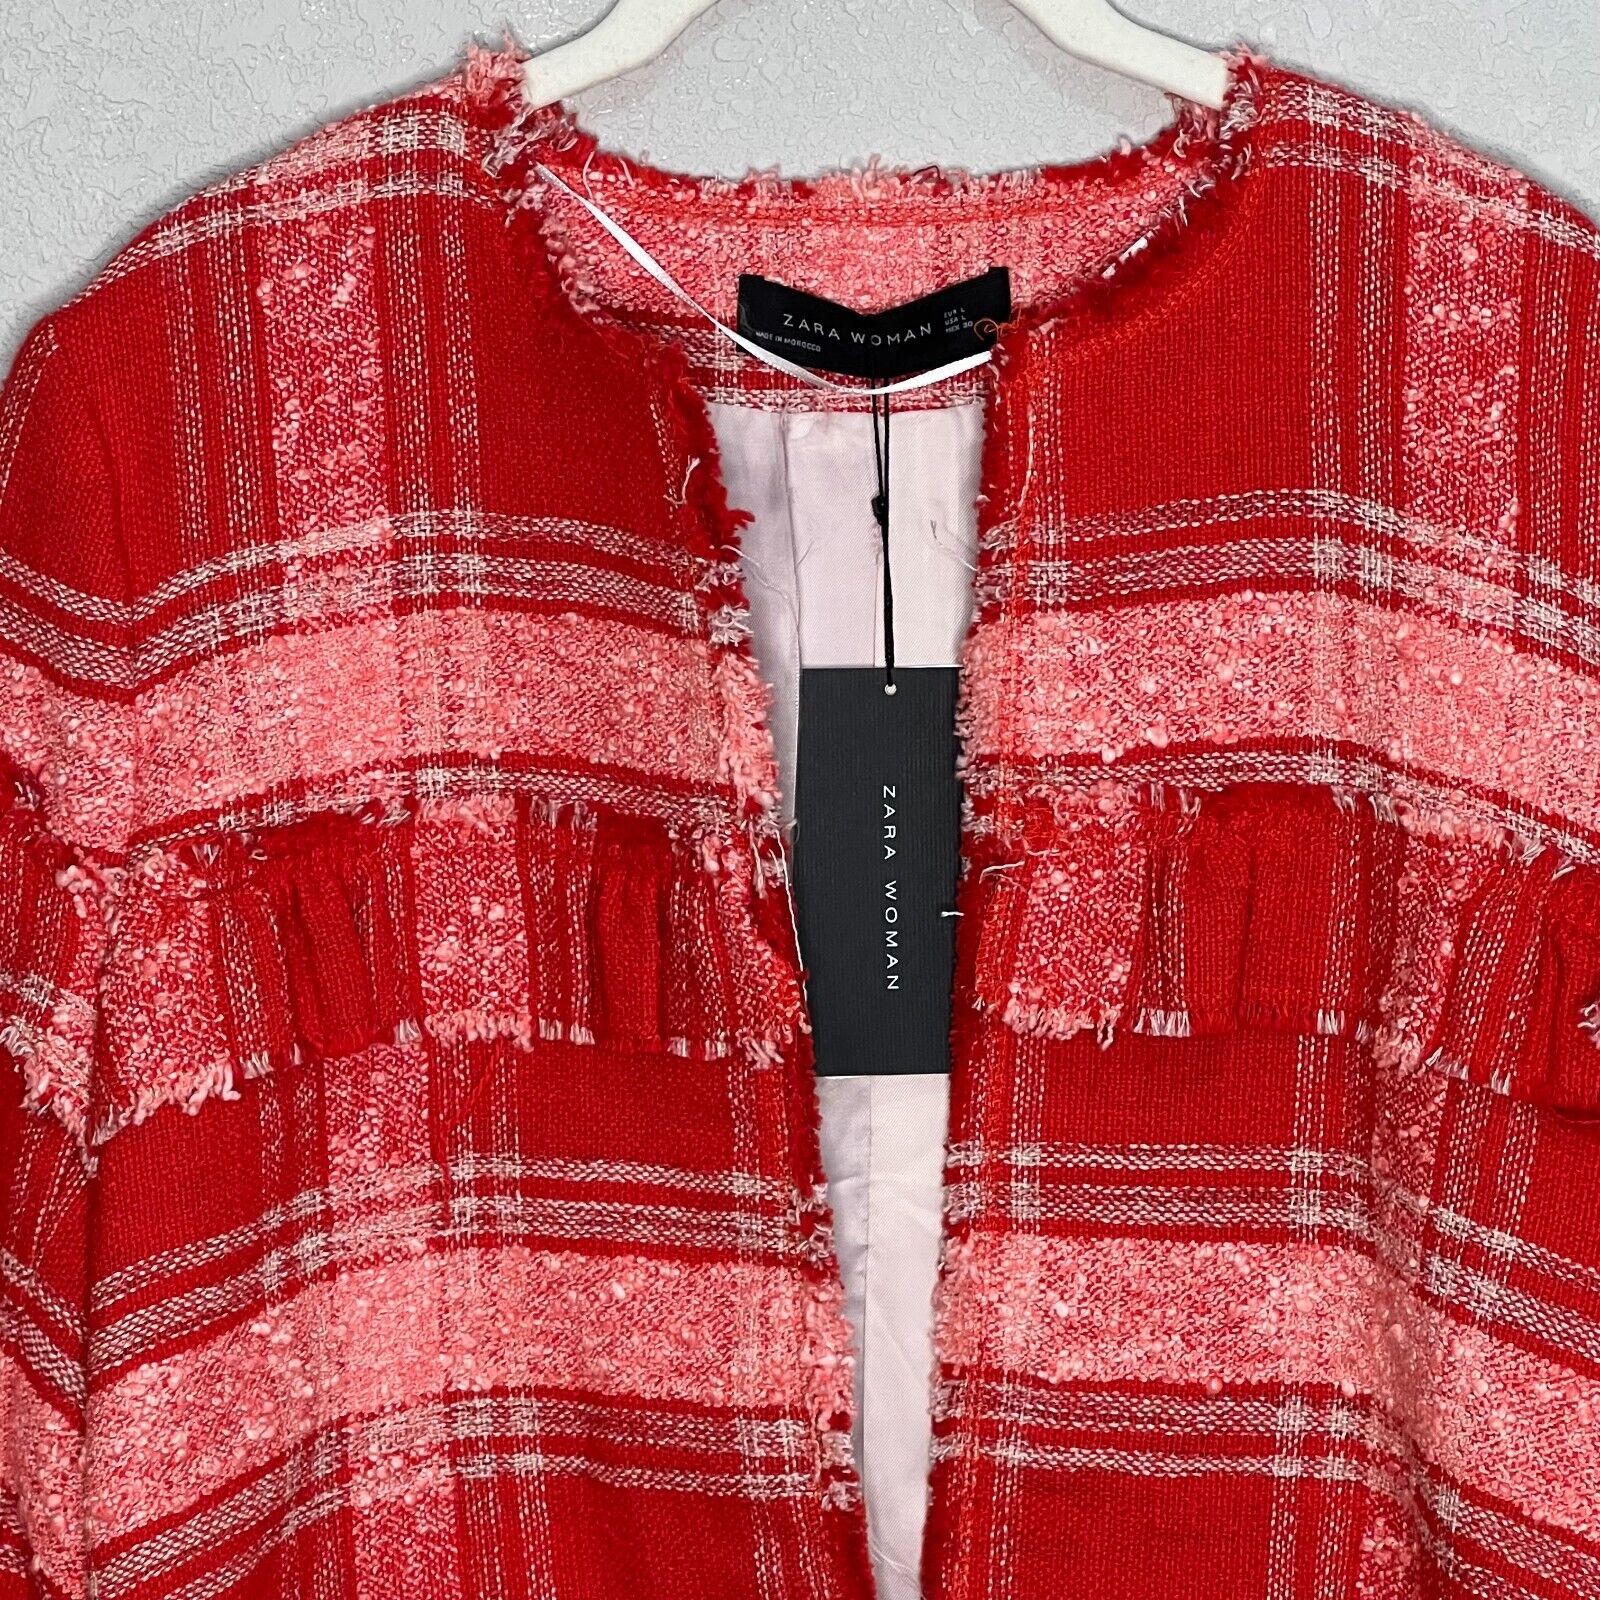 Zara Red White Plaid Tweed Jacket Size Large NEW $149